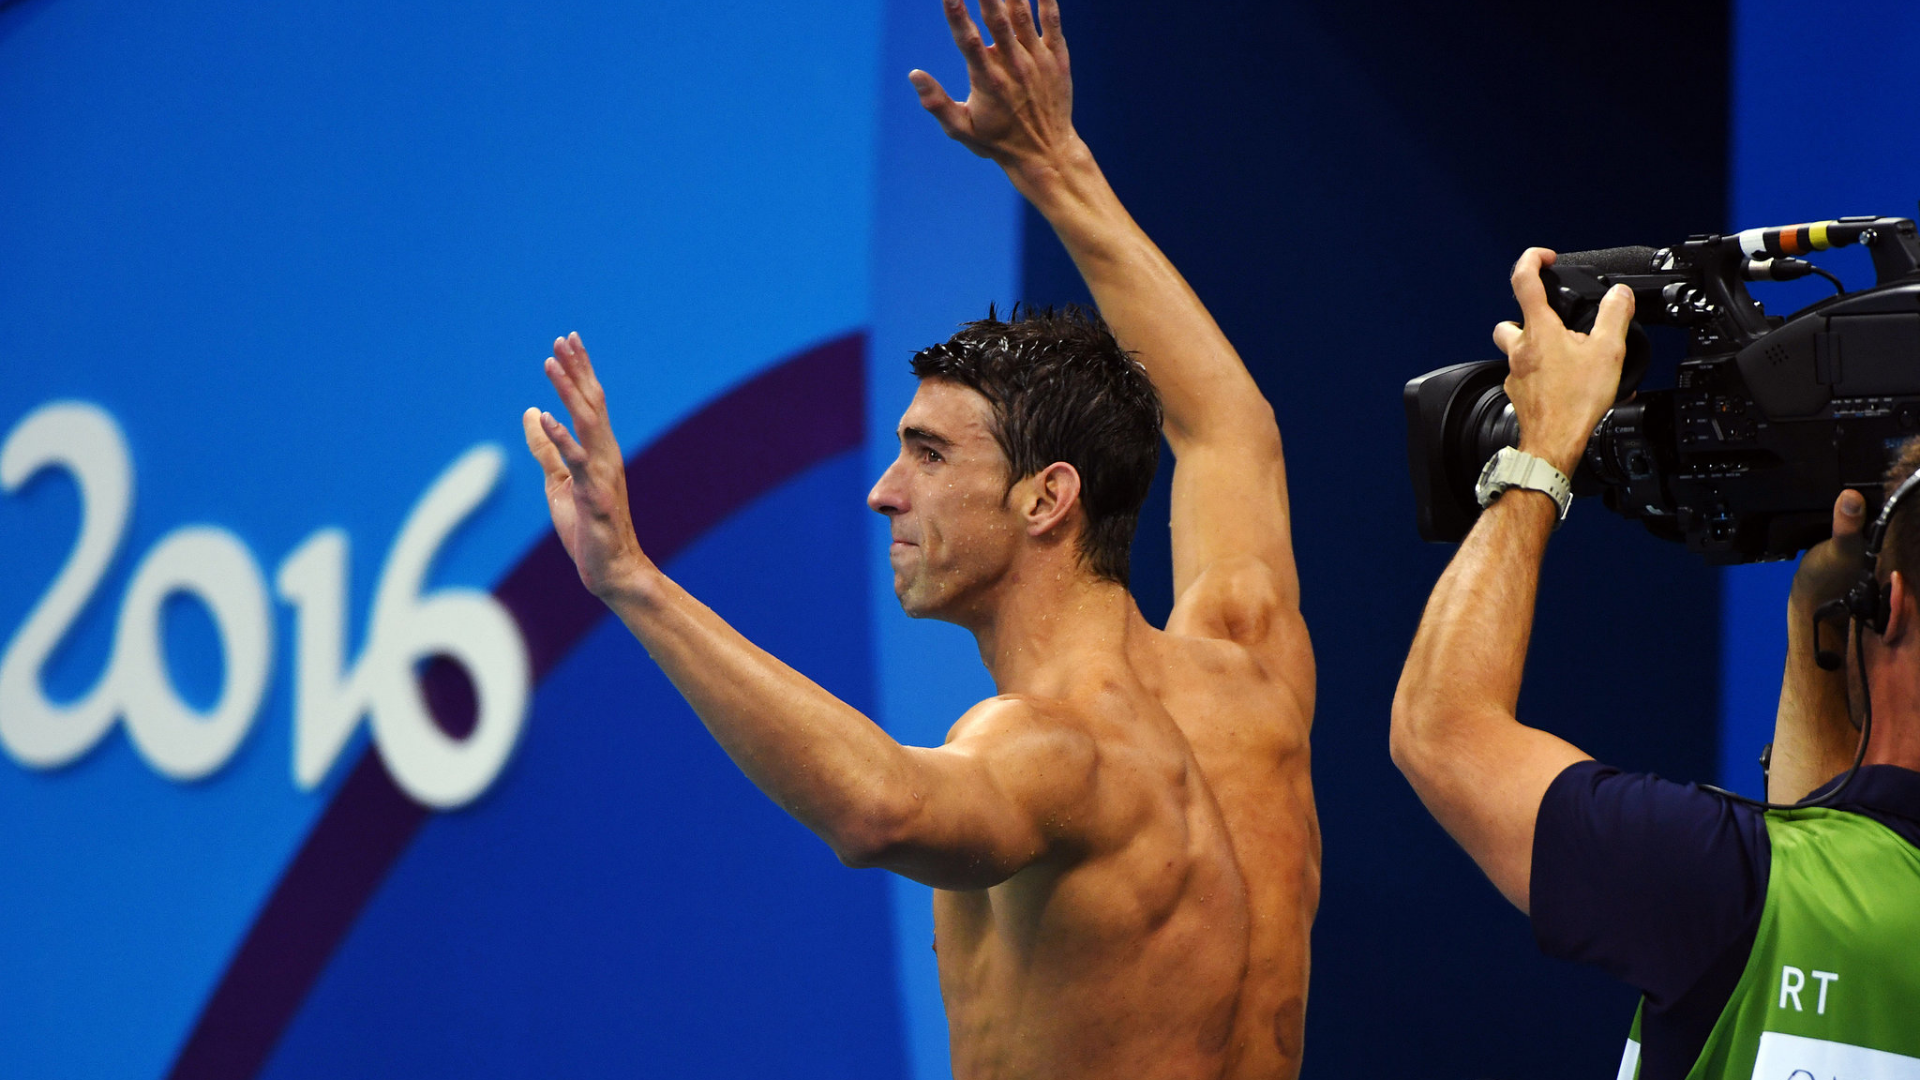 Sporu bıraktığı anda Michael Phelps'in görseli.